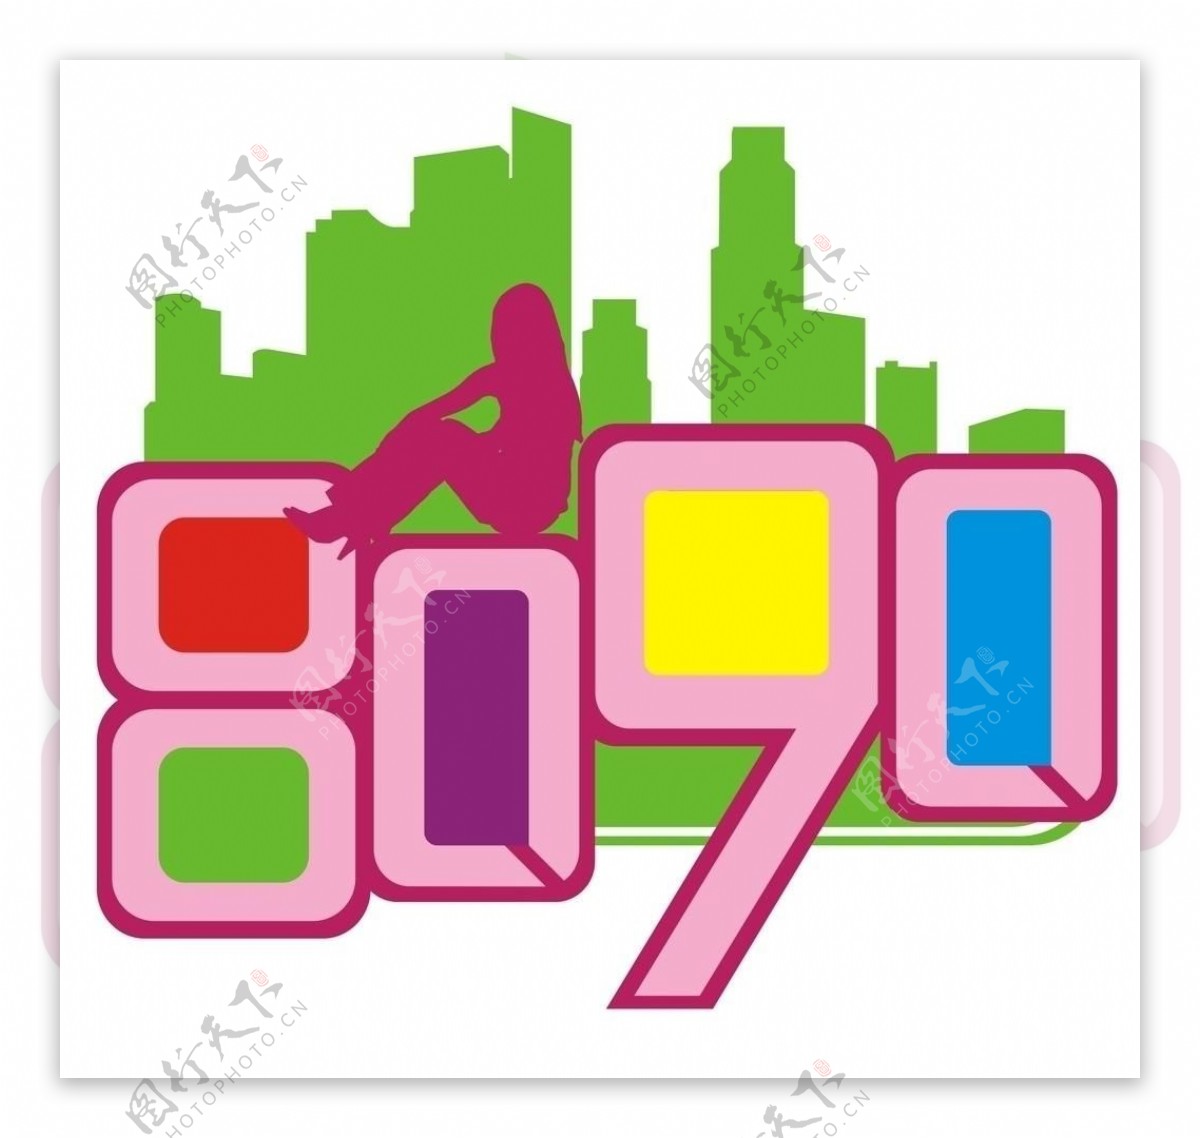 八零九零群logo图片